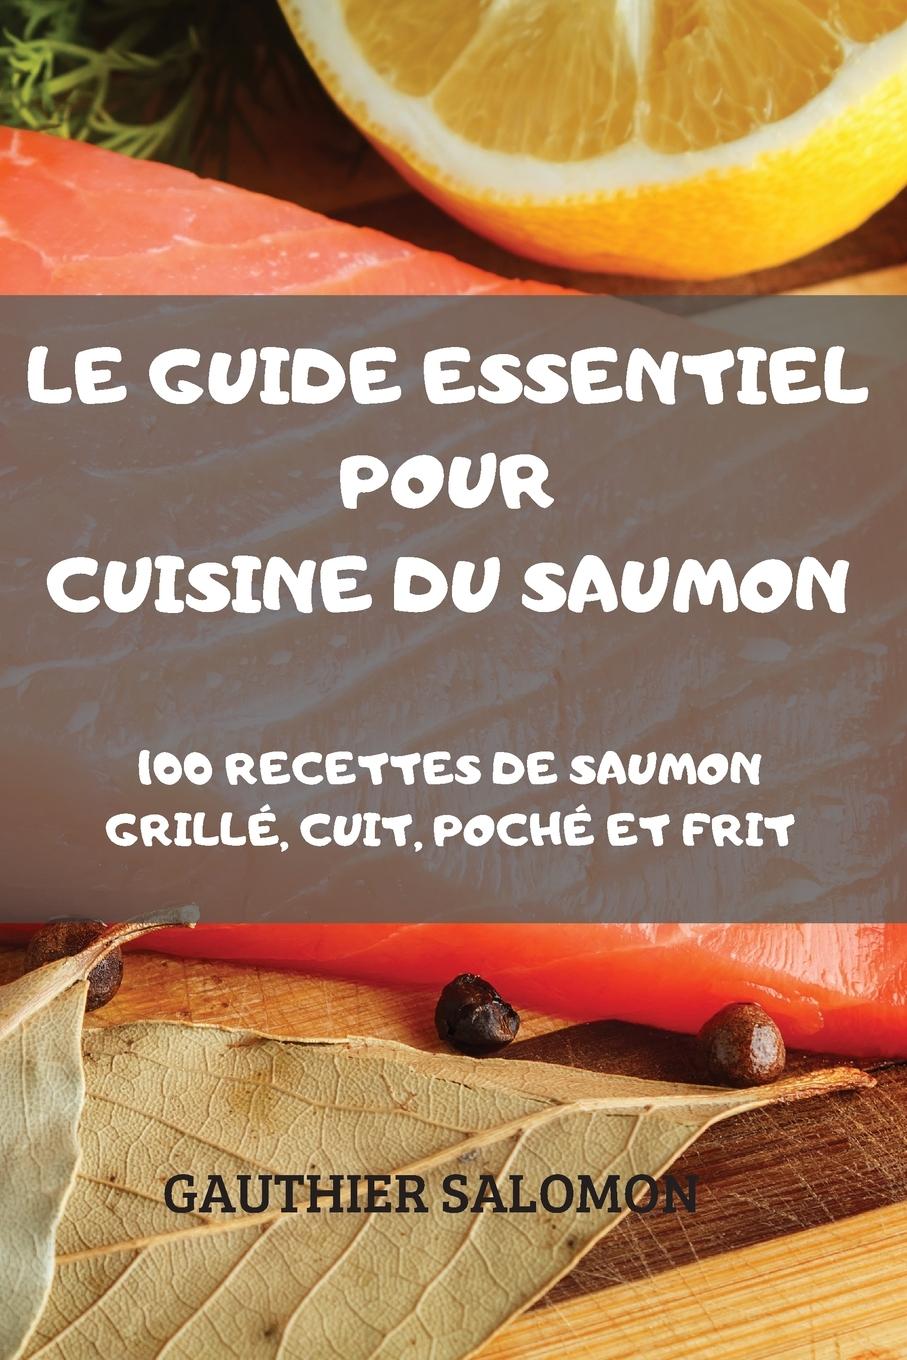 Книга Guide Essentiel Pour Cuisine Du Saumon 